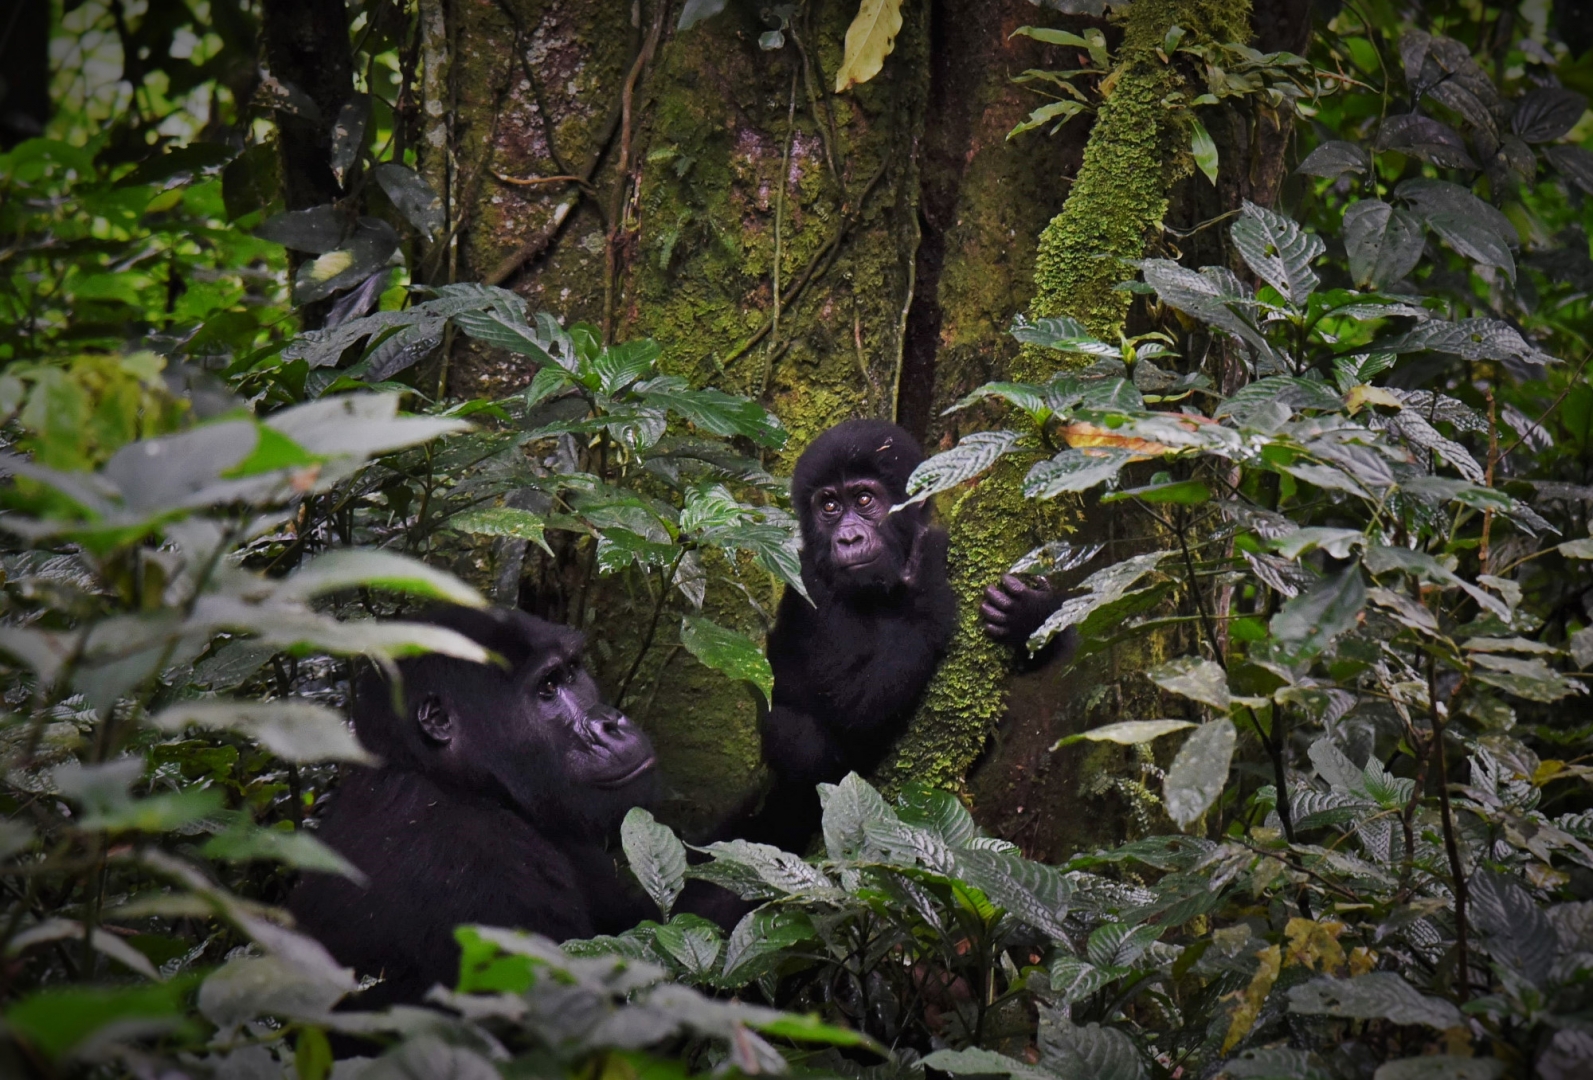 В возрасте 6 месяцев детёныши горилл способны передвигаться самостоятельно, к 18 месяцам совершать короткие прогулки